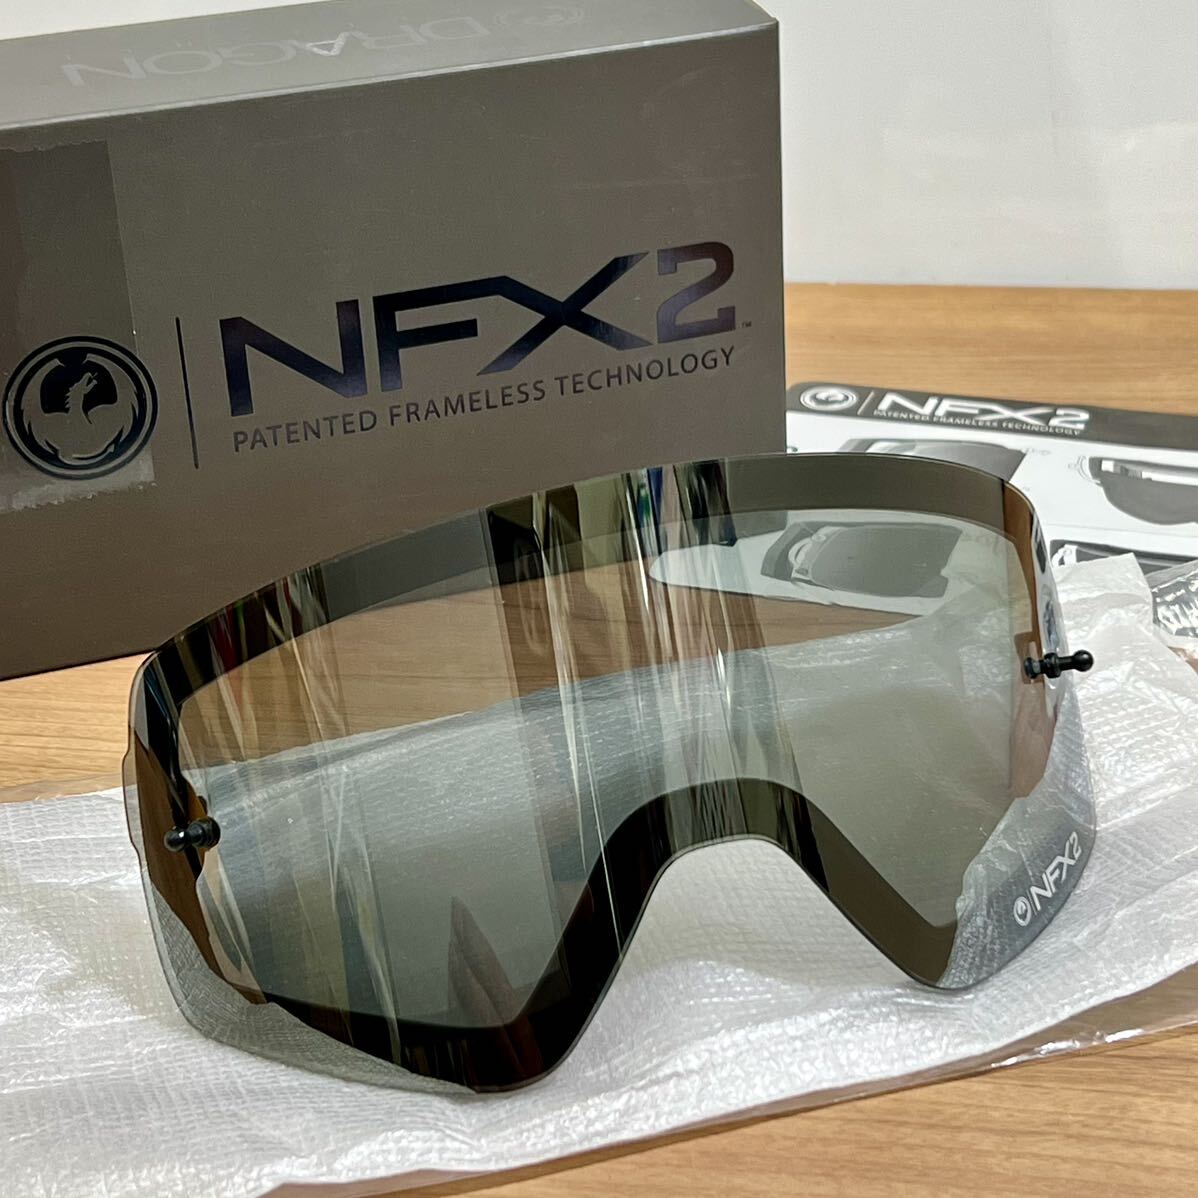 * Dragon (Dragon) NFX2 MX защитные очки для запасной линзы серый | ион 722-6079 { быстрое решение * бесплатная доставка }